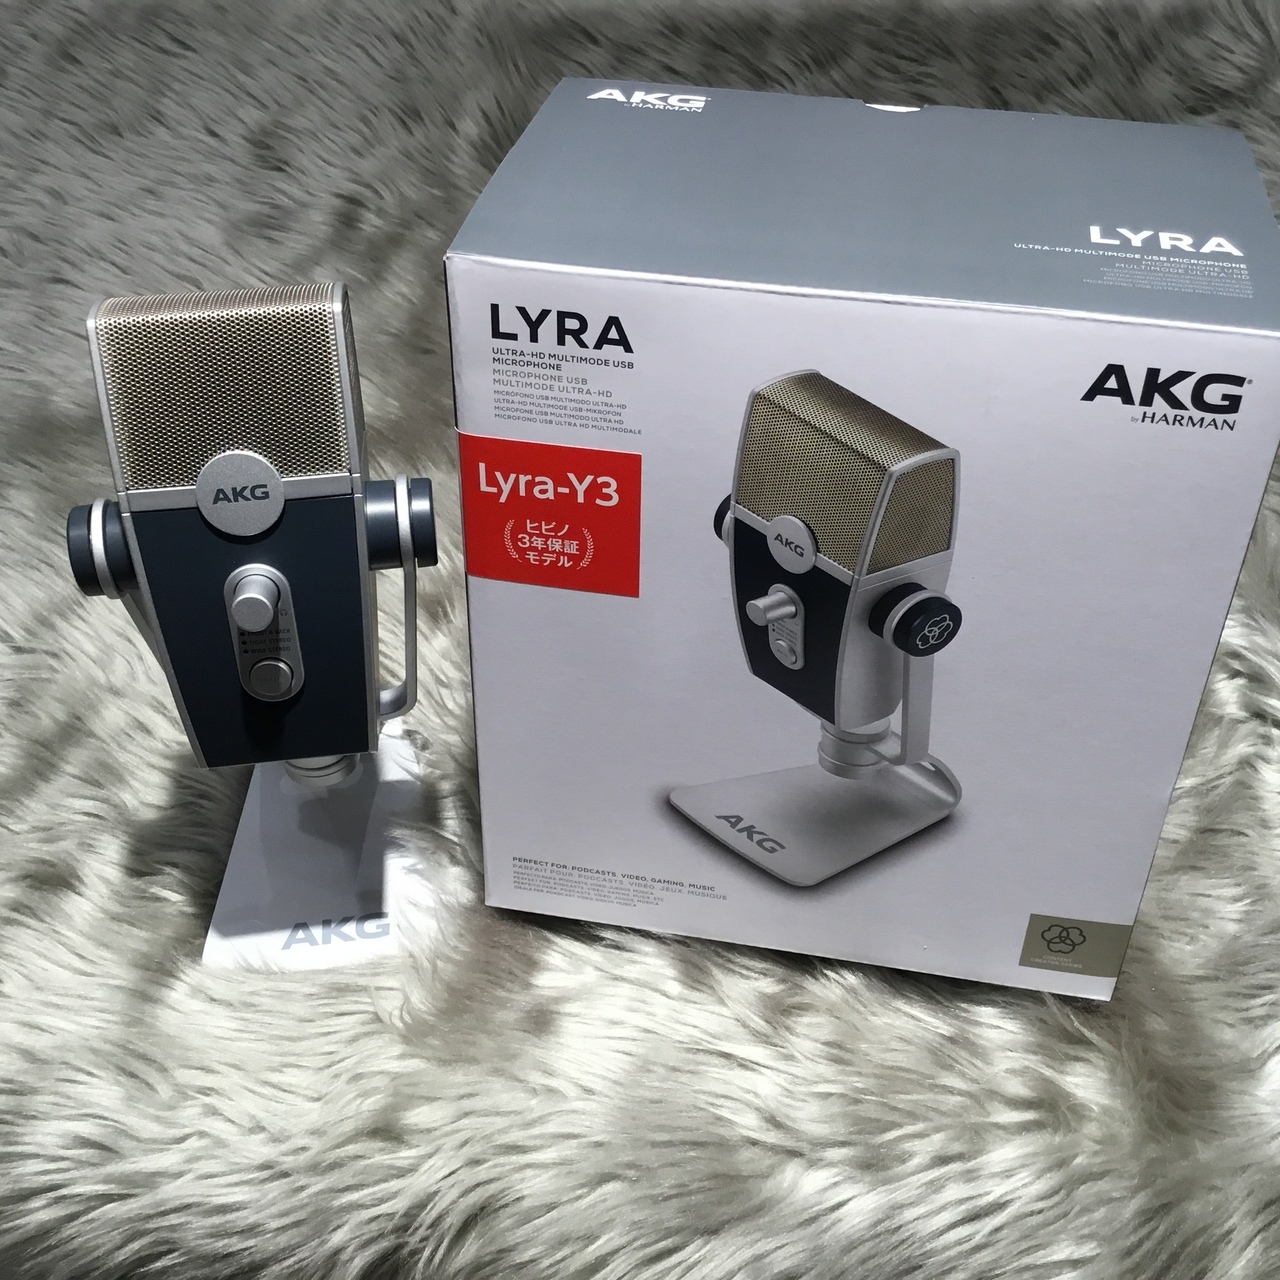 AKG USBコンデンサーマイク Lyra-y3 新品 www.krzysztofbialy.com